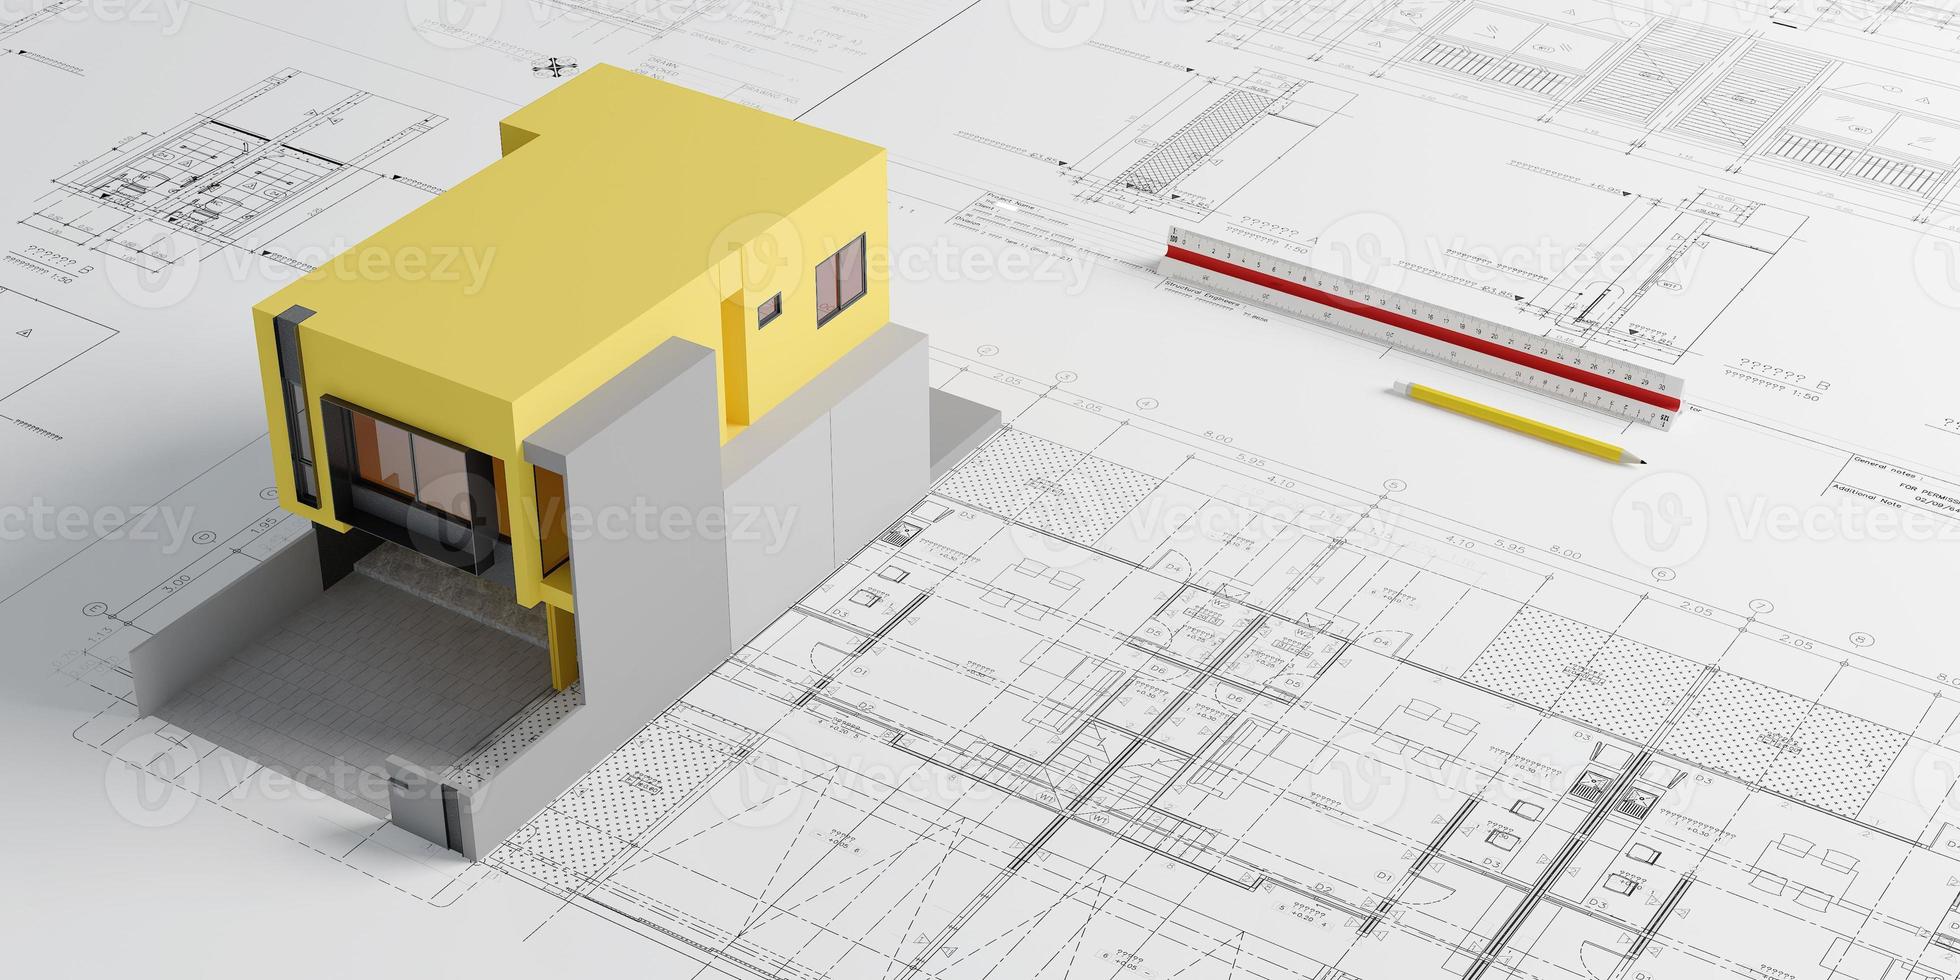 ritning planer och gul hus modell med skala linjal och pencil.architect concept.3d rendering foto